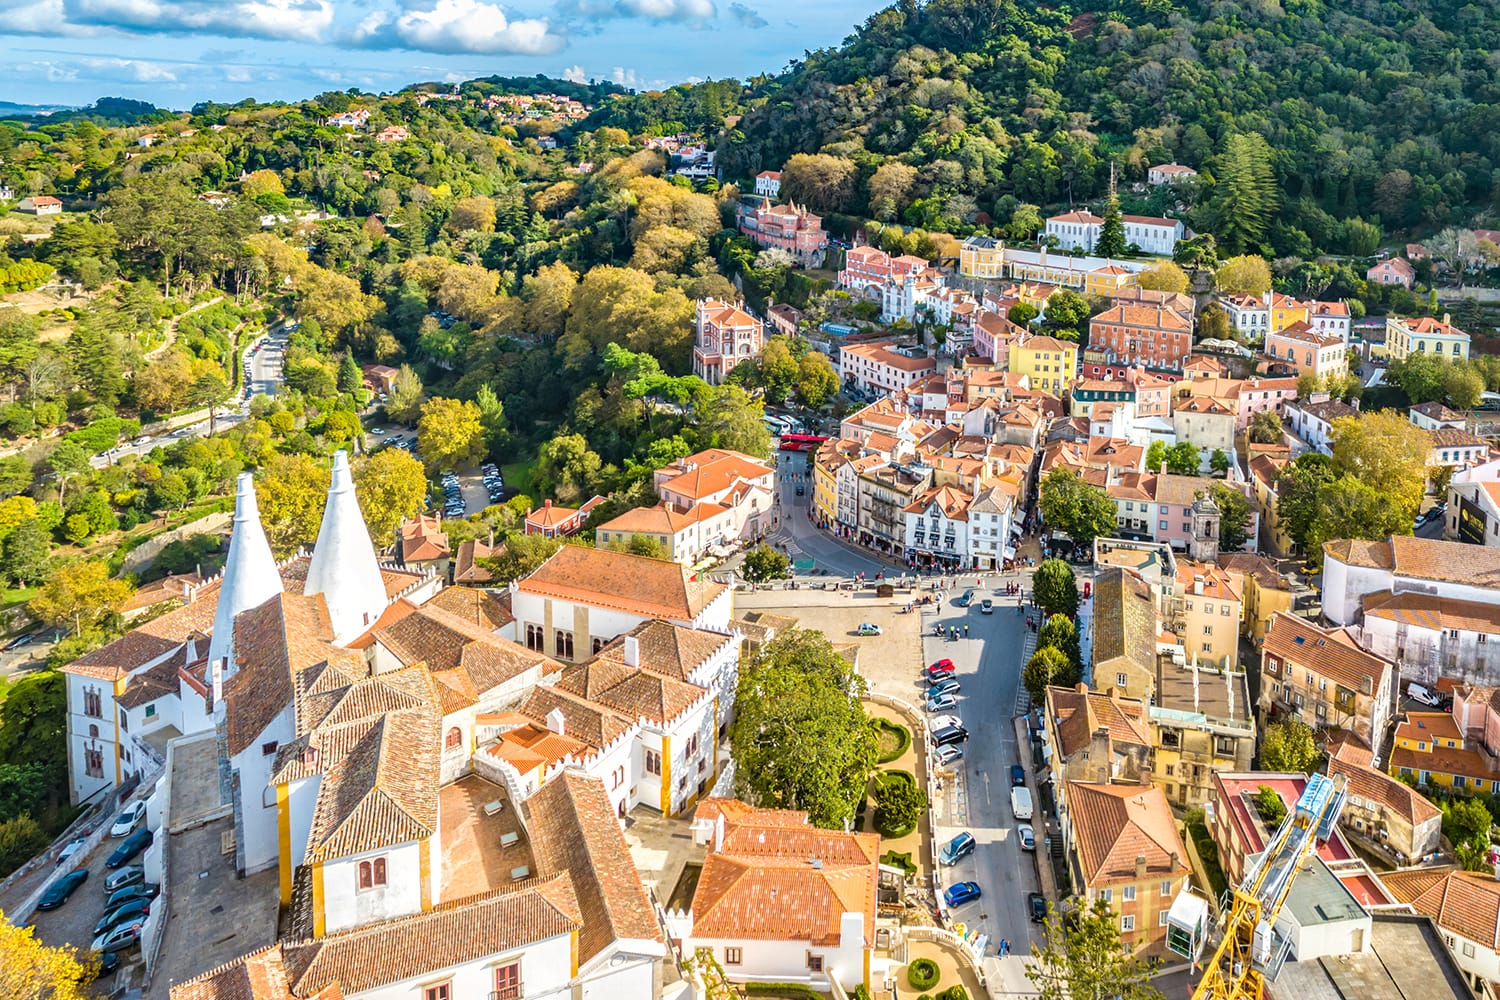 Bí mật Sintra - Nơi của những lâu đài và cung điện huyền diệu nhất thế giới - 6